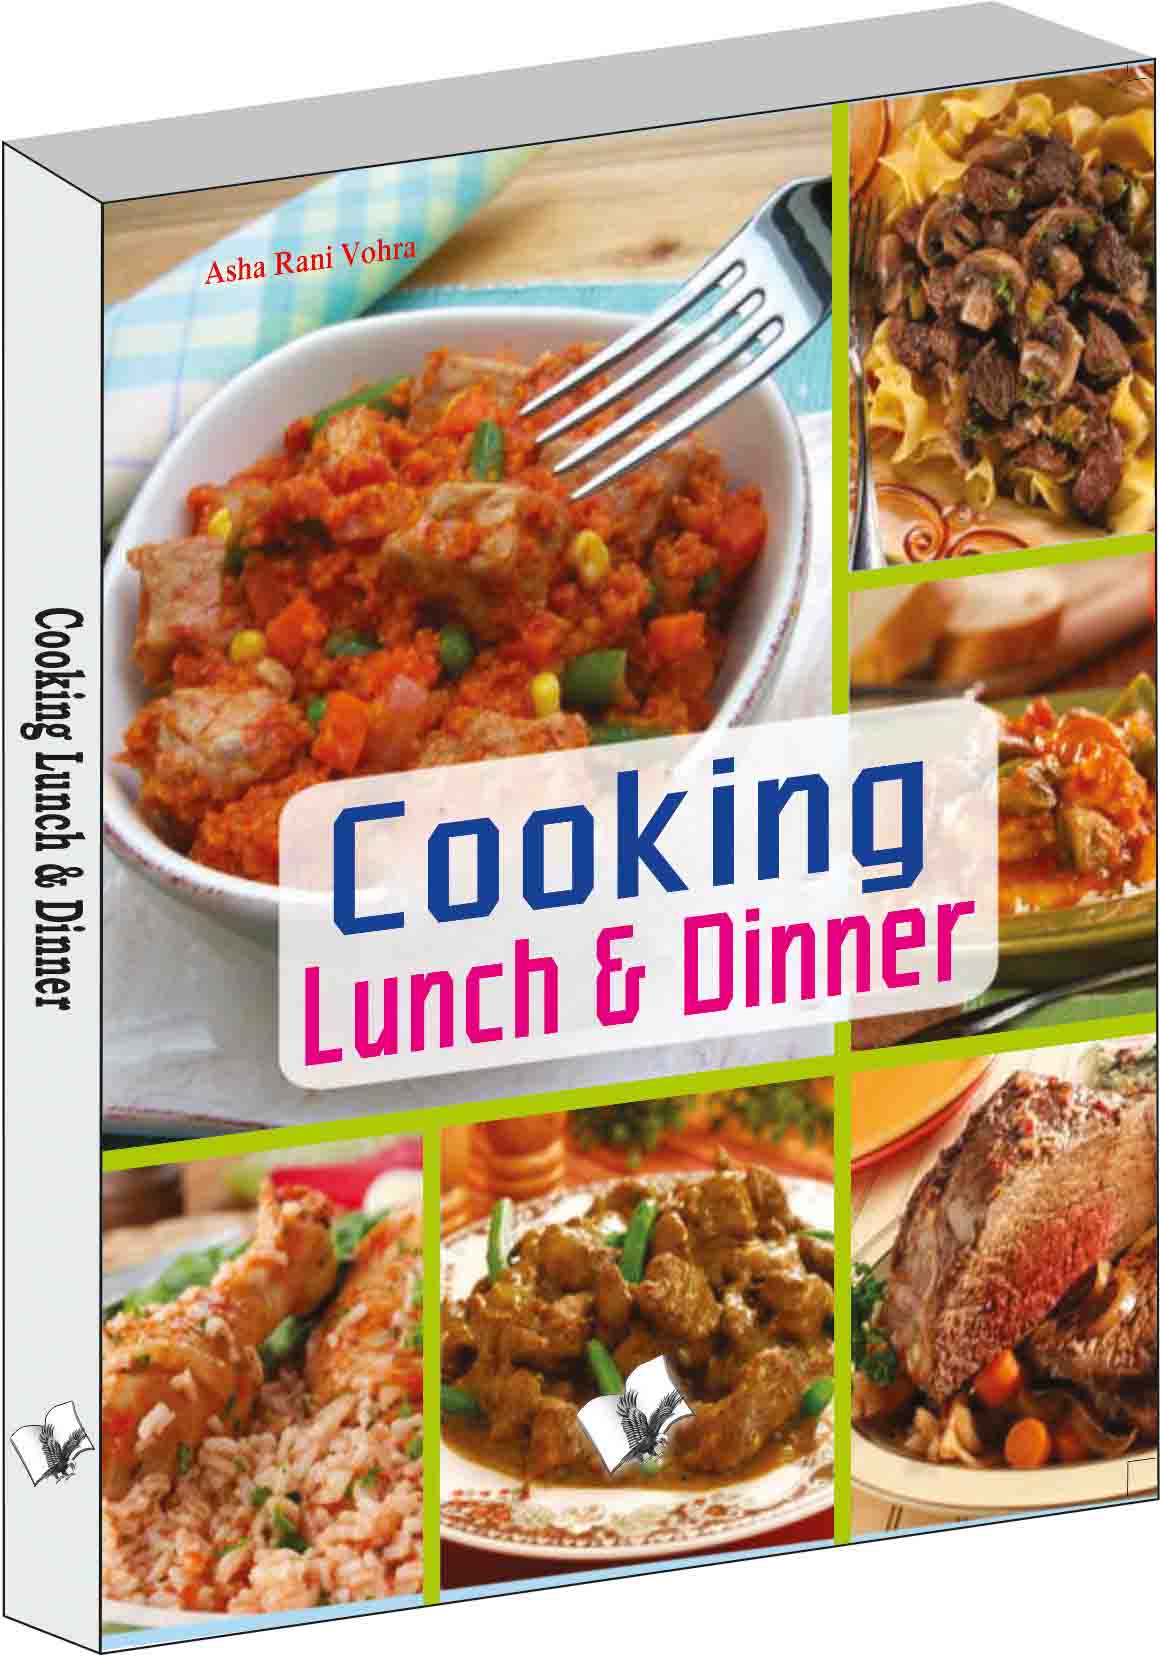 Cooking lunch & dinner-Presentation enhances taste of food